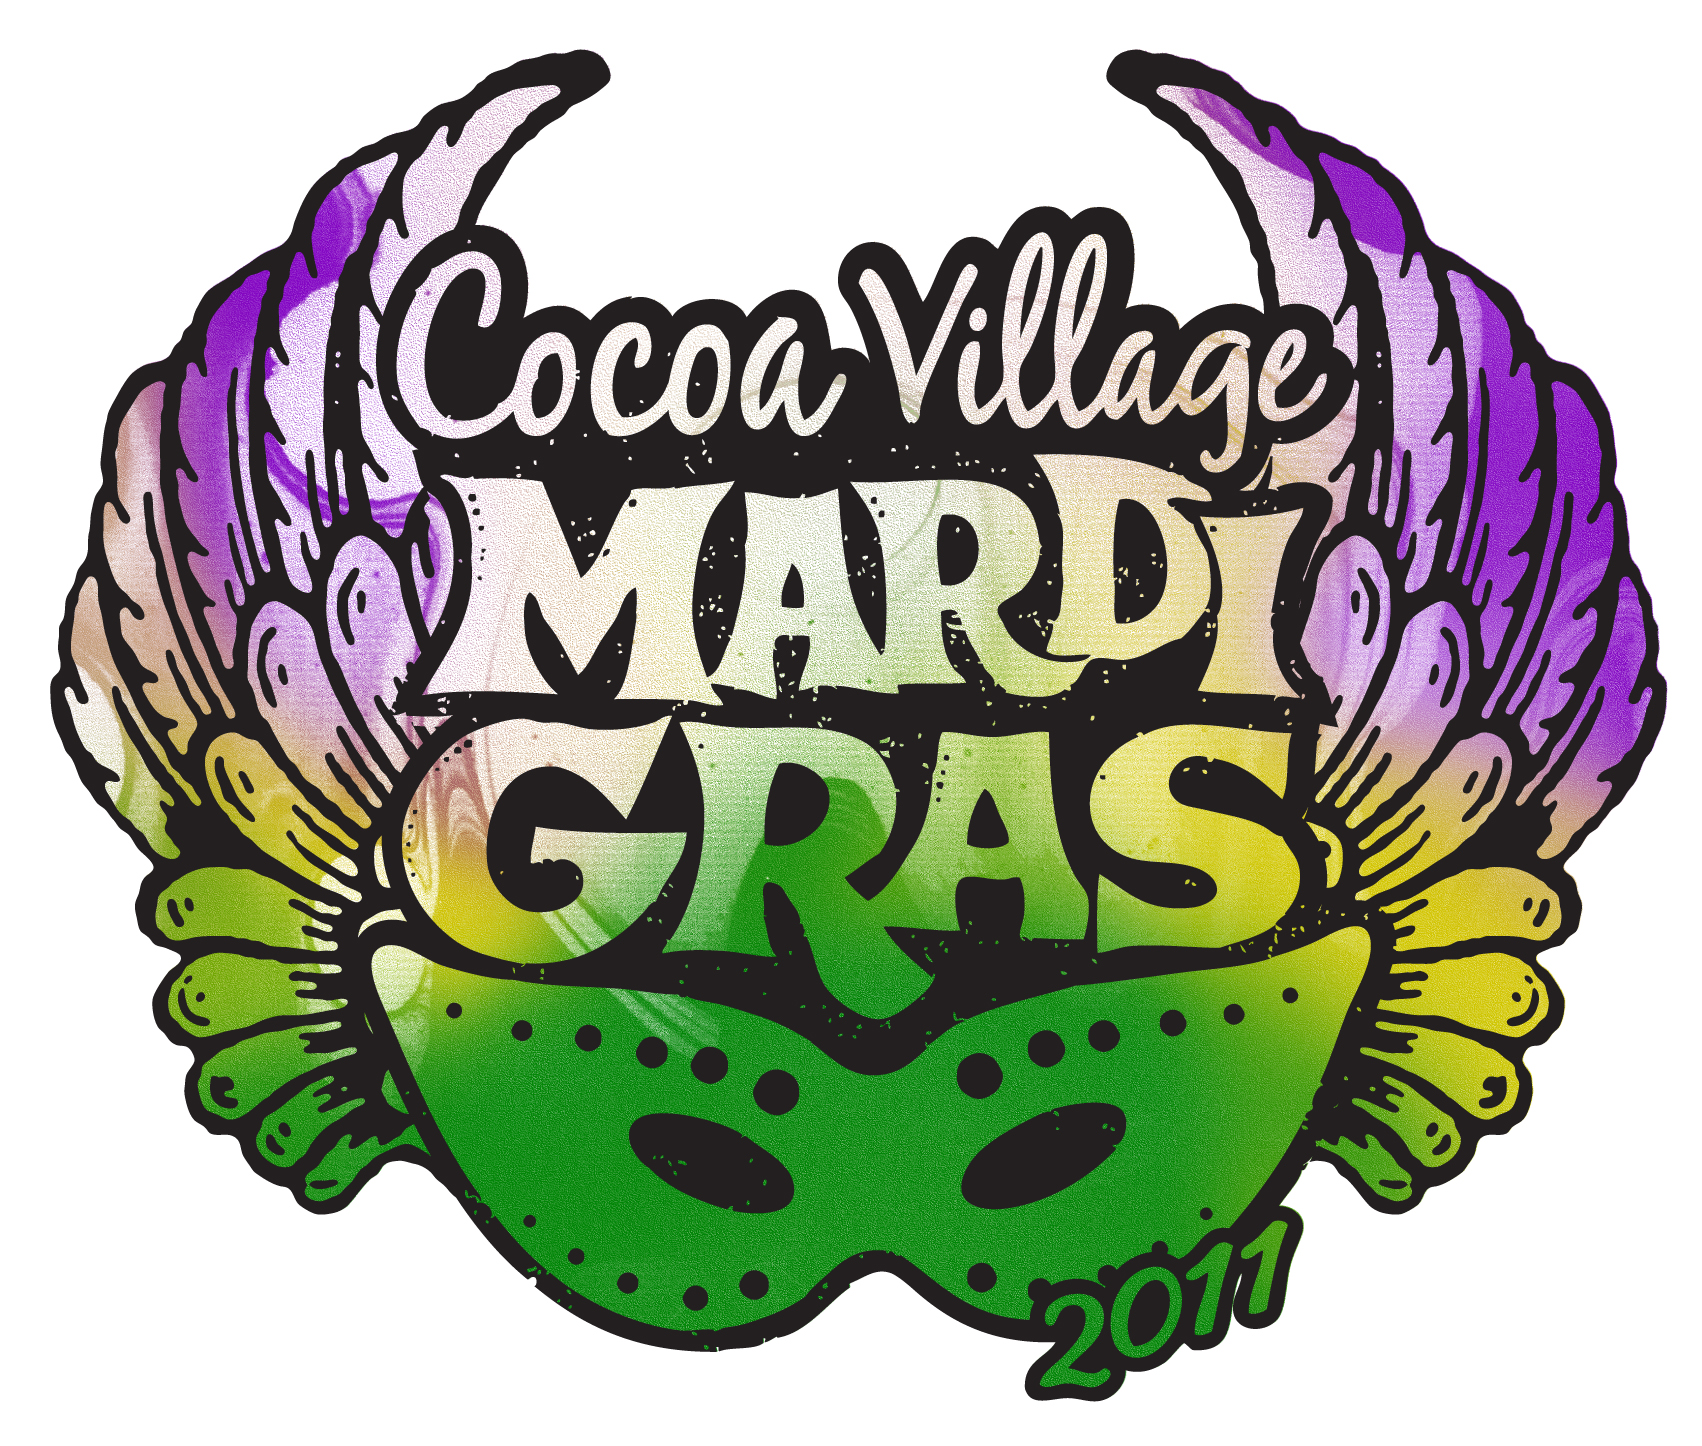 21st Annual Cocoa Village Mardi Gras WFIT